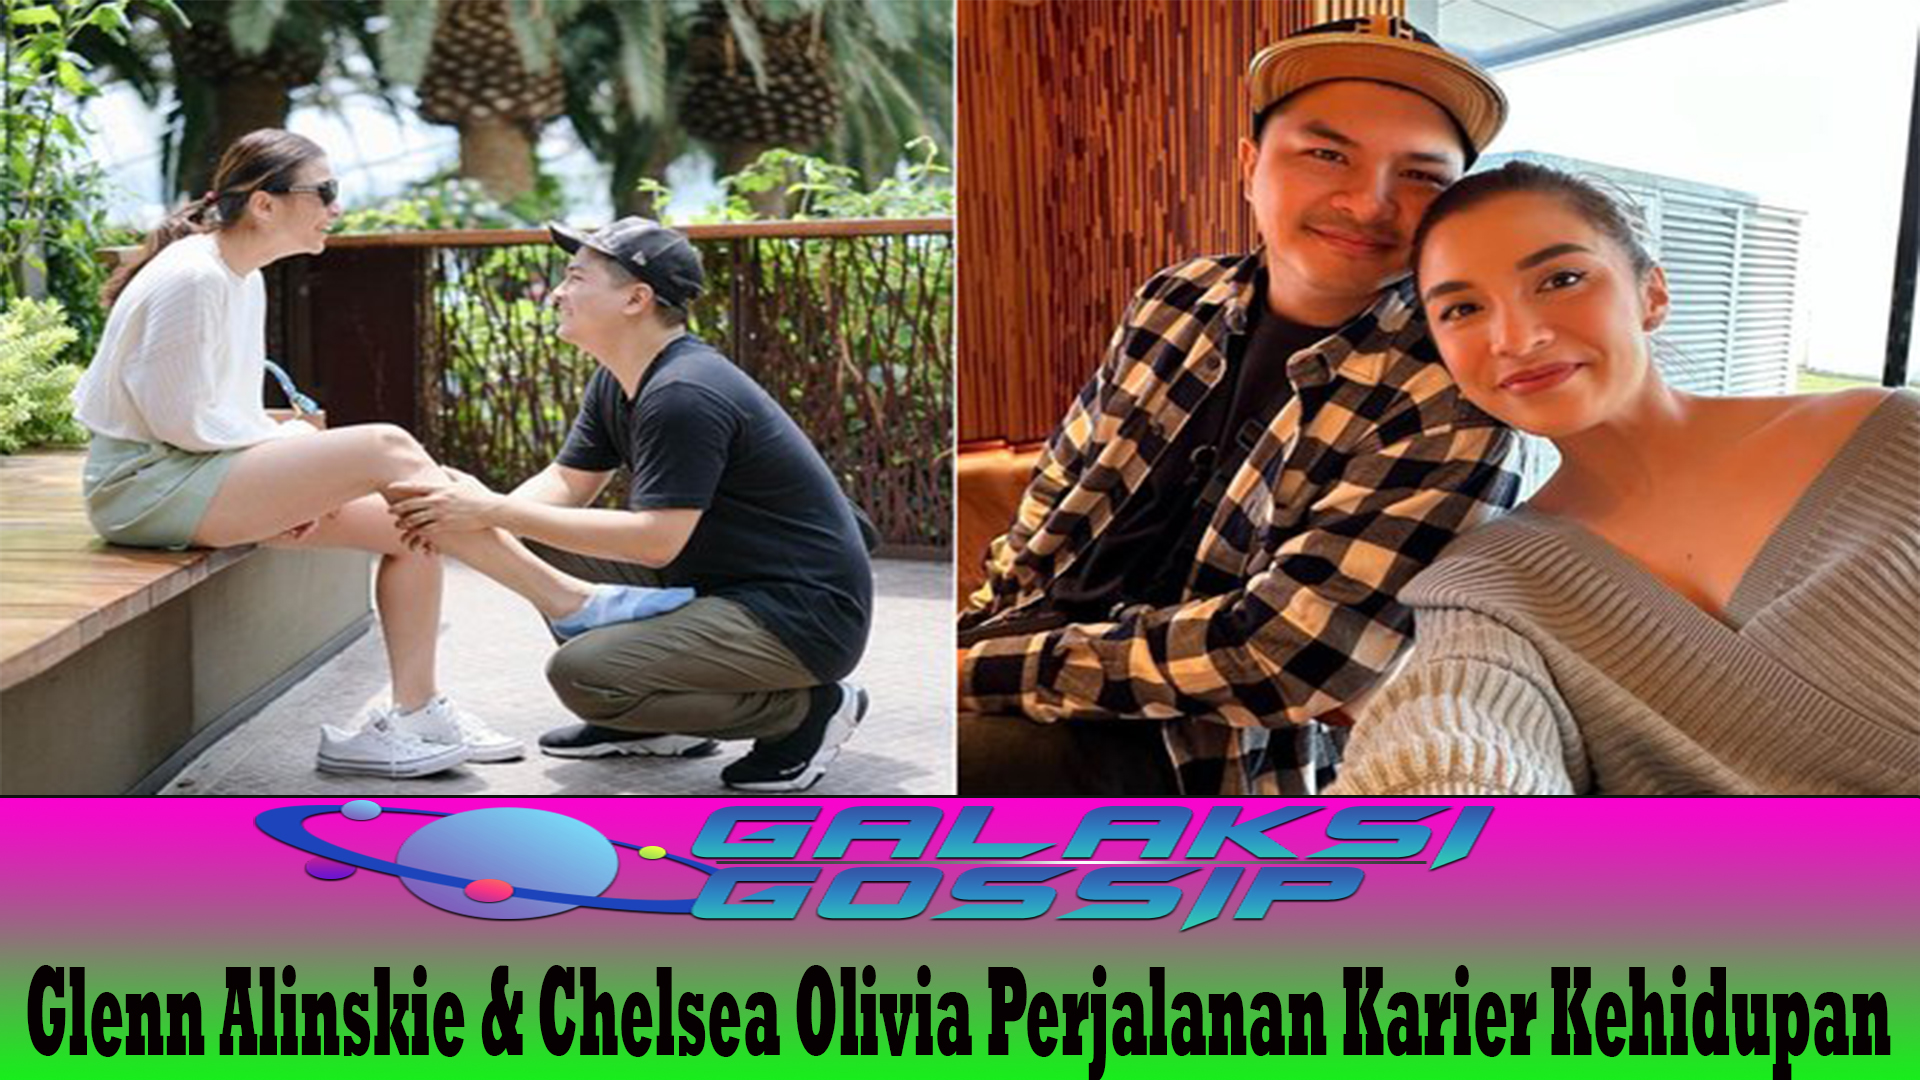 Glenn Alinskie & Chelsea Olivia Perjalanan Karier Kehidupan